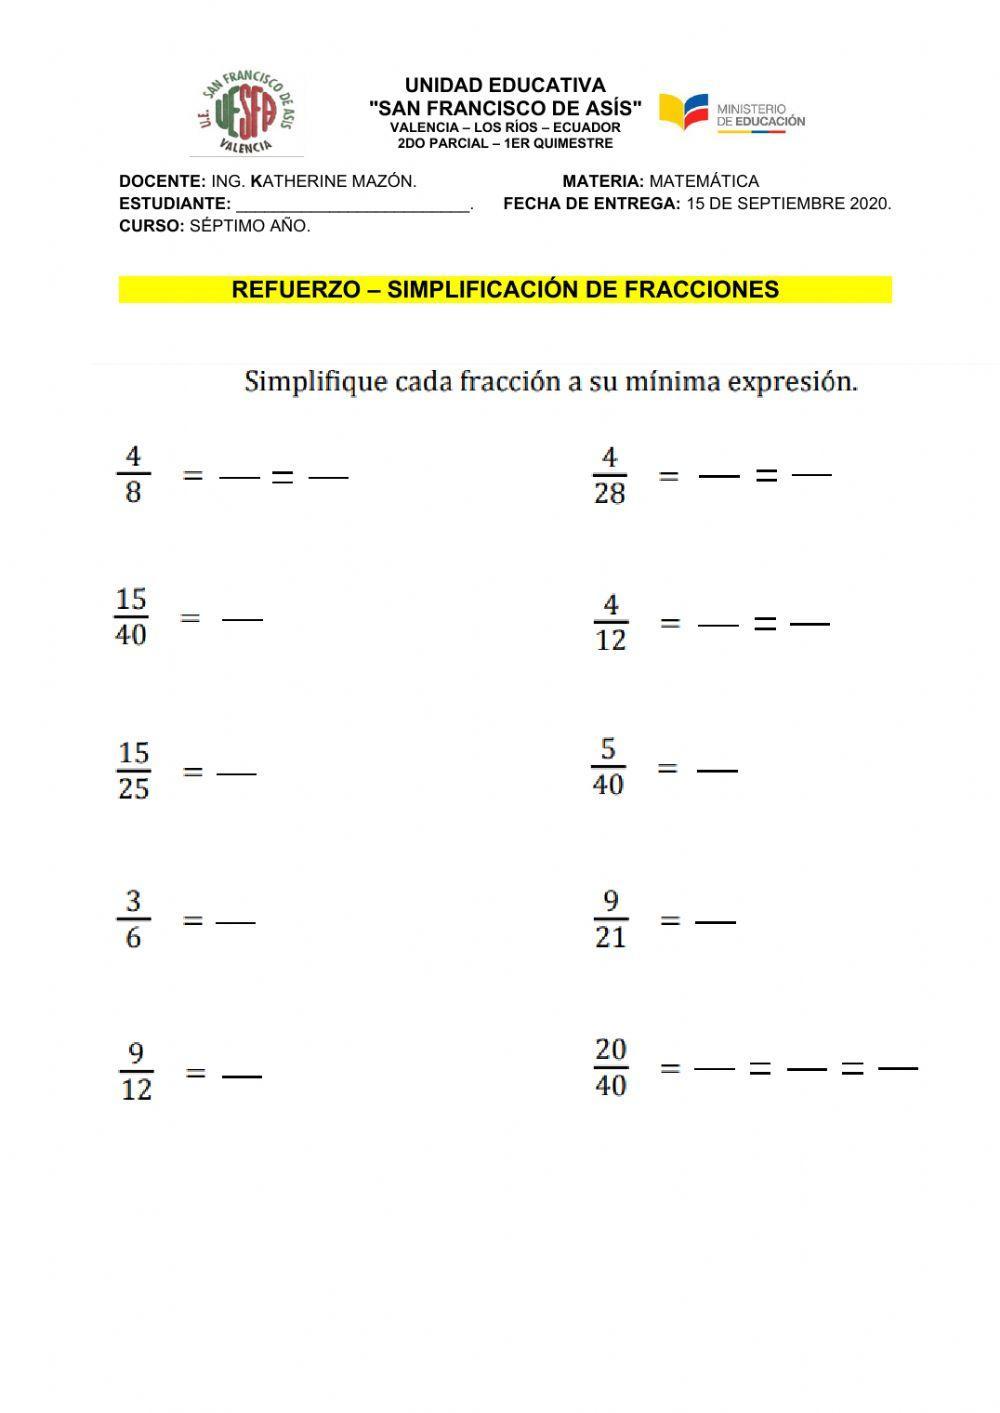 Simplificar fracciones